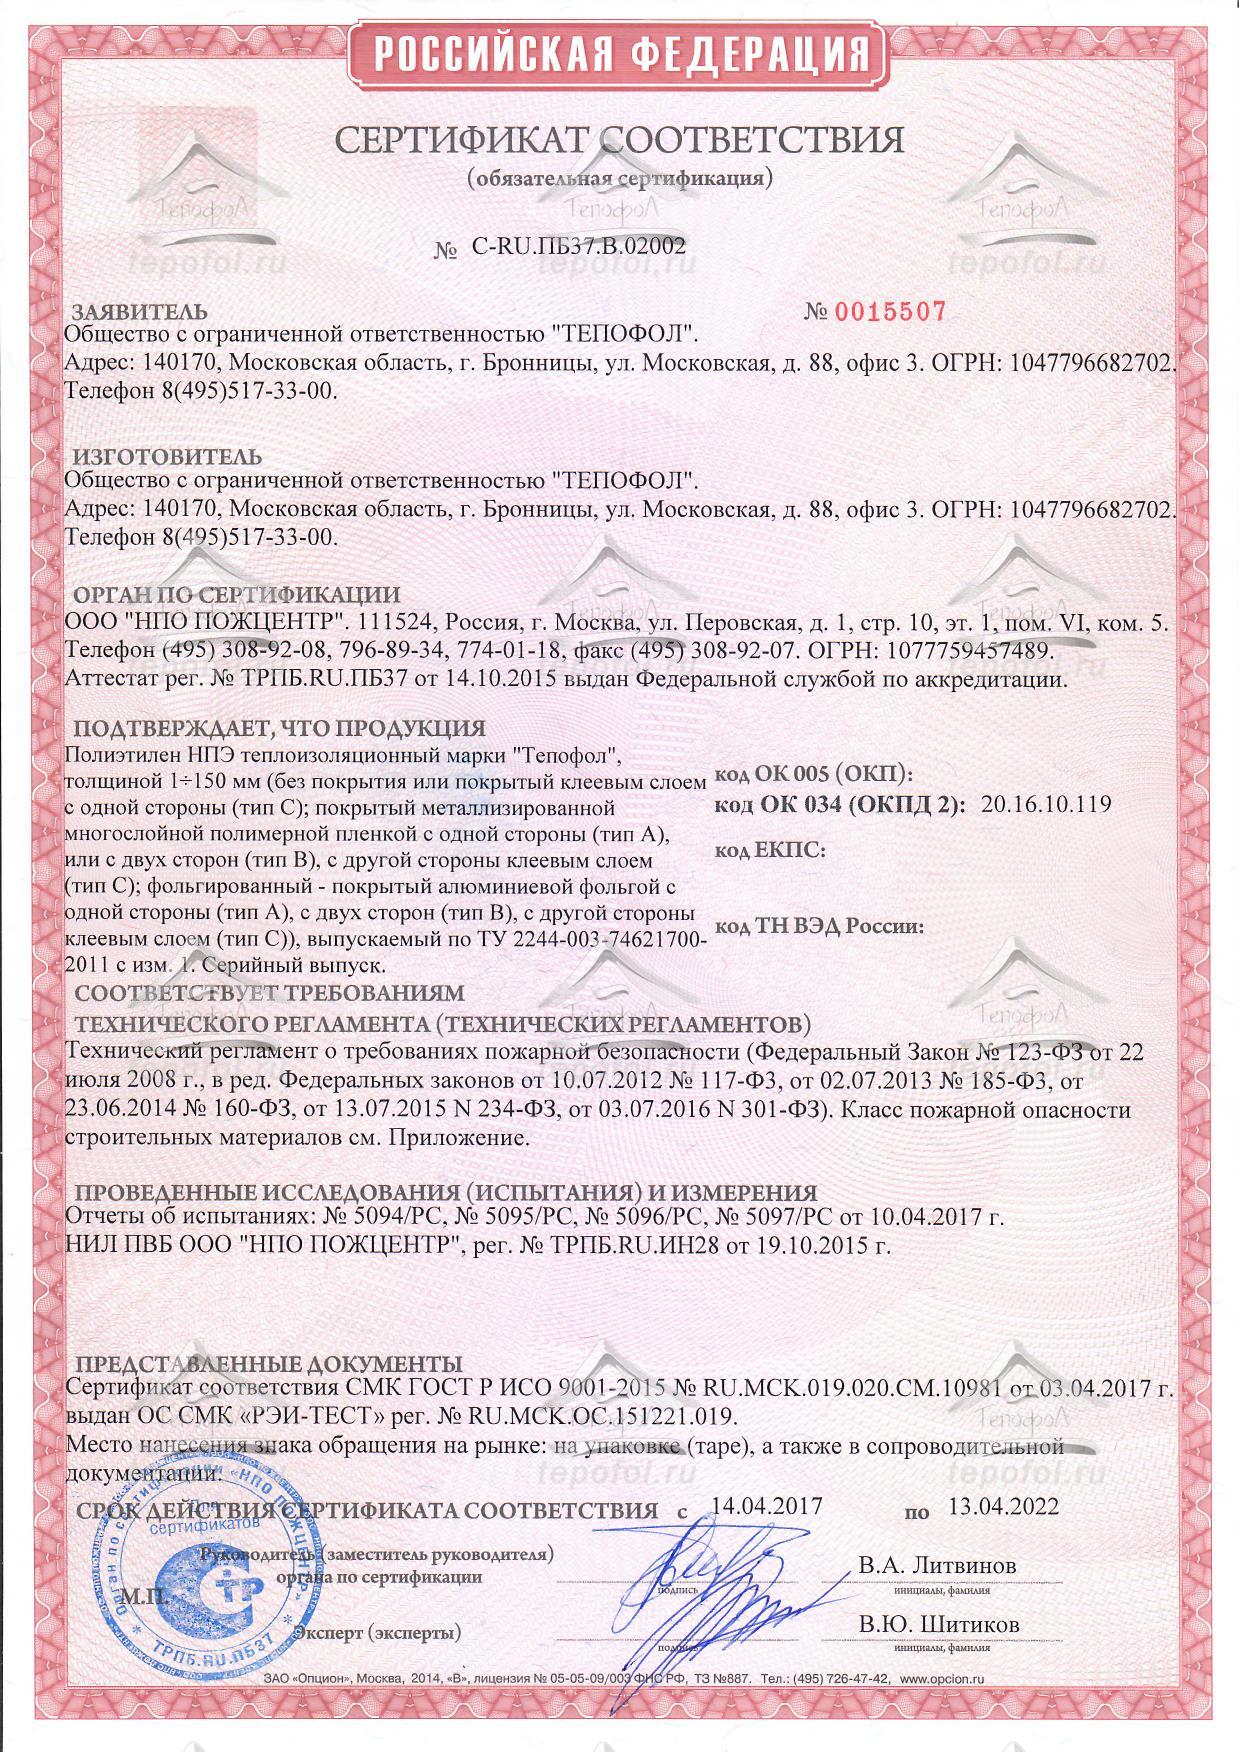 Демпферная лента для стяжки пола сертификат соответствия